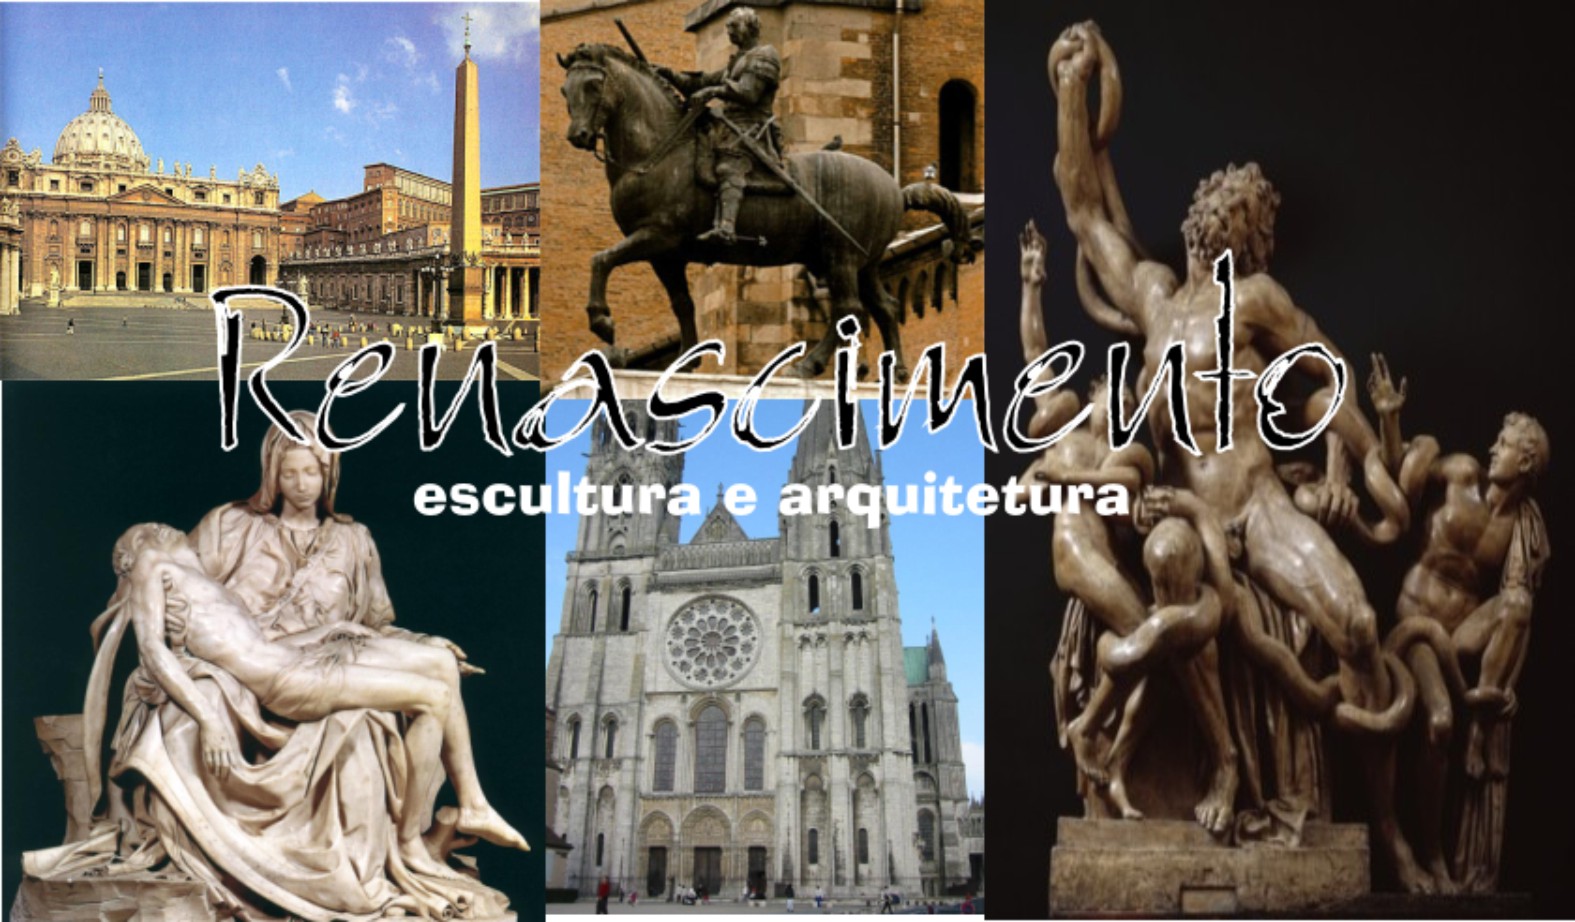 O Renascimento: Escultura e arquitetura